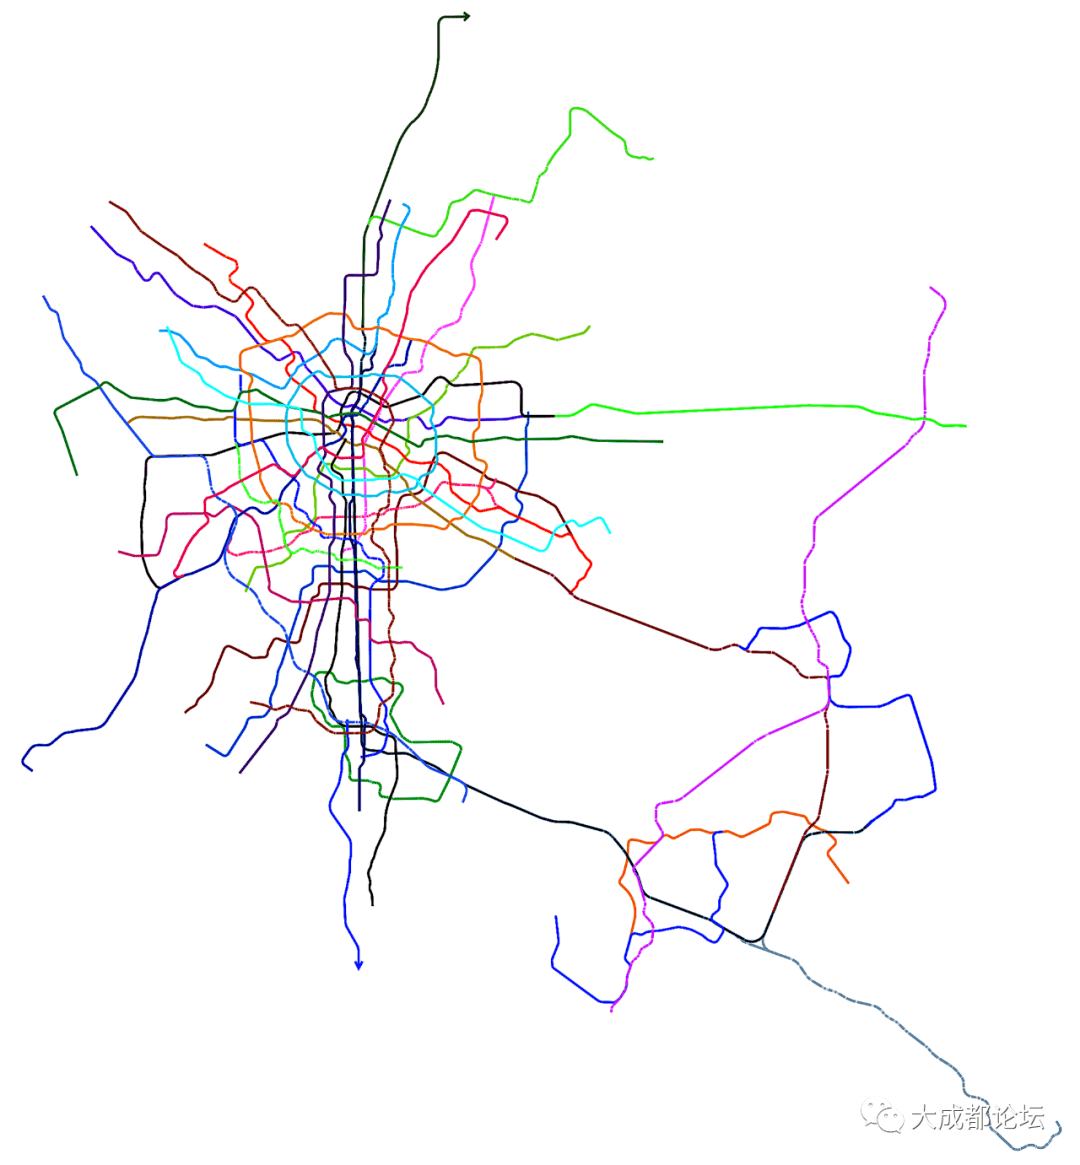 未列入2021版成都城市轨道交通线网远期规划的轨道交通线路